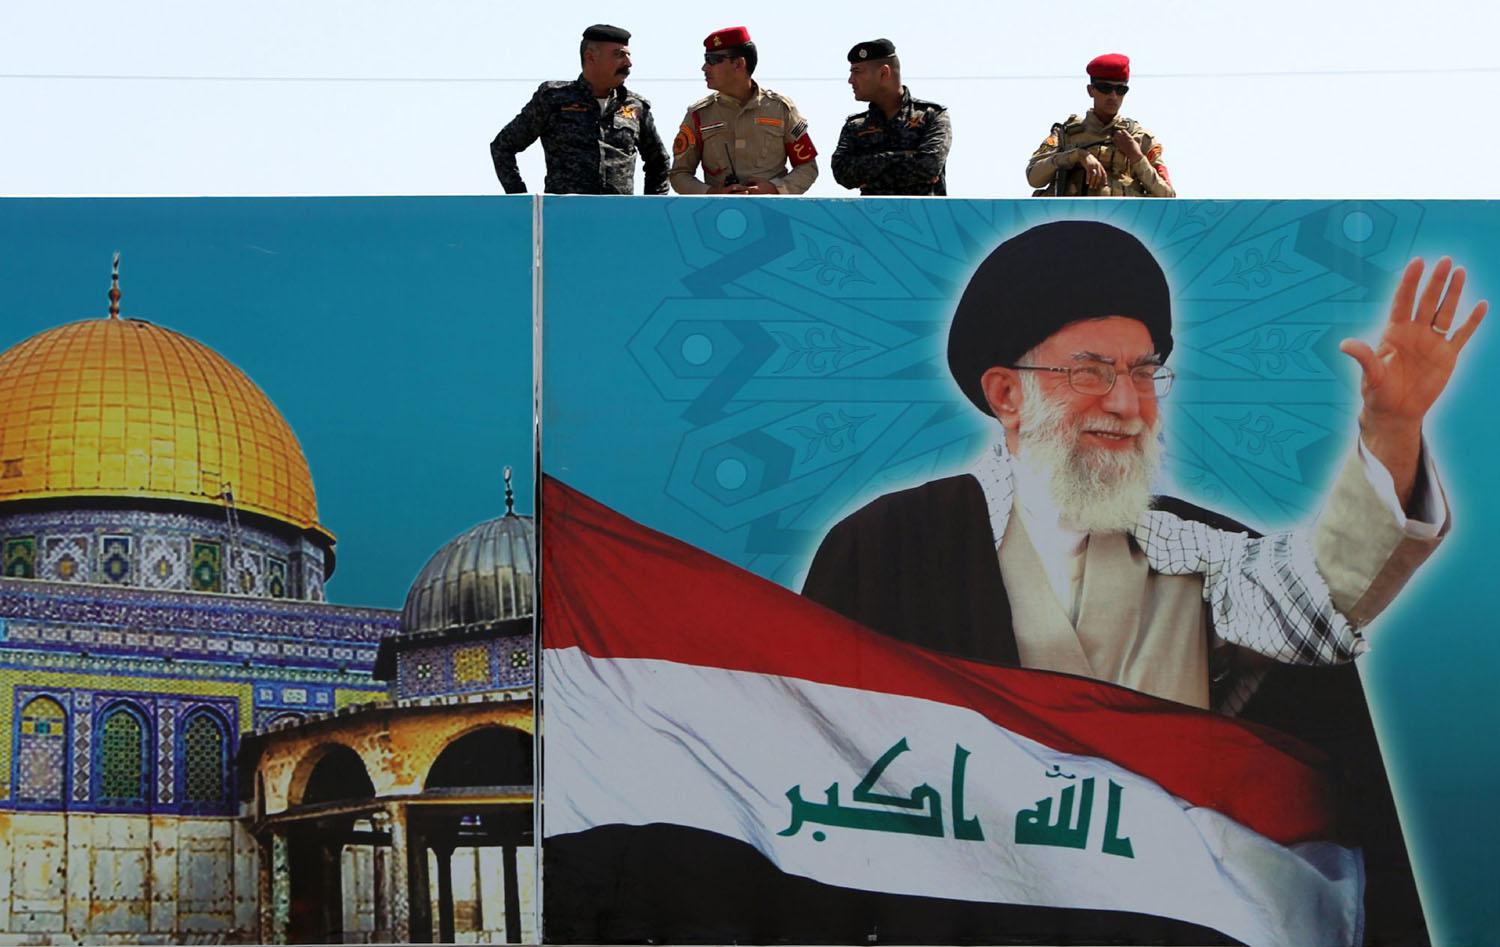 ميليشيات عراقية تابعة لإيران ترفع صورة المرشد الإيراني على خامنئي